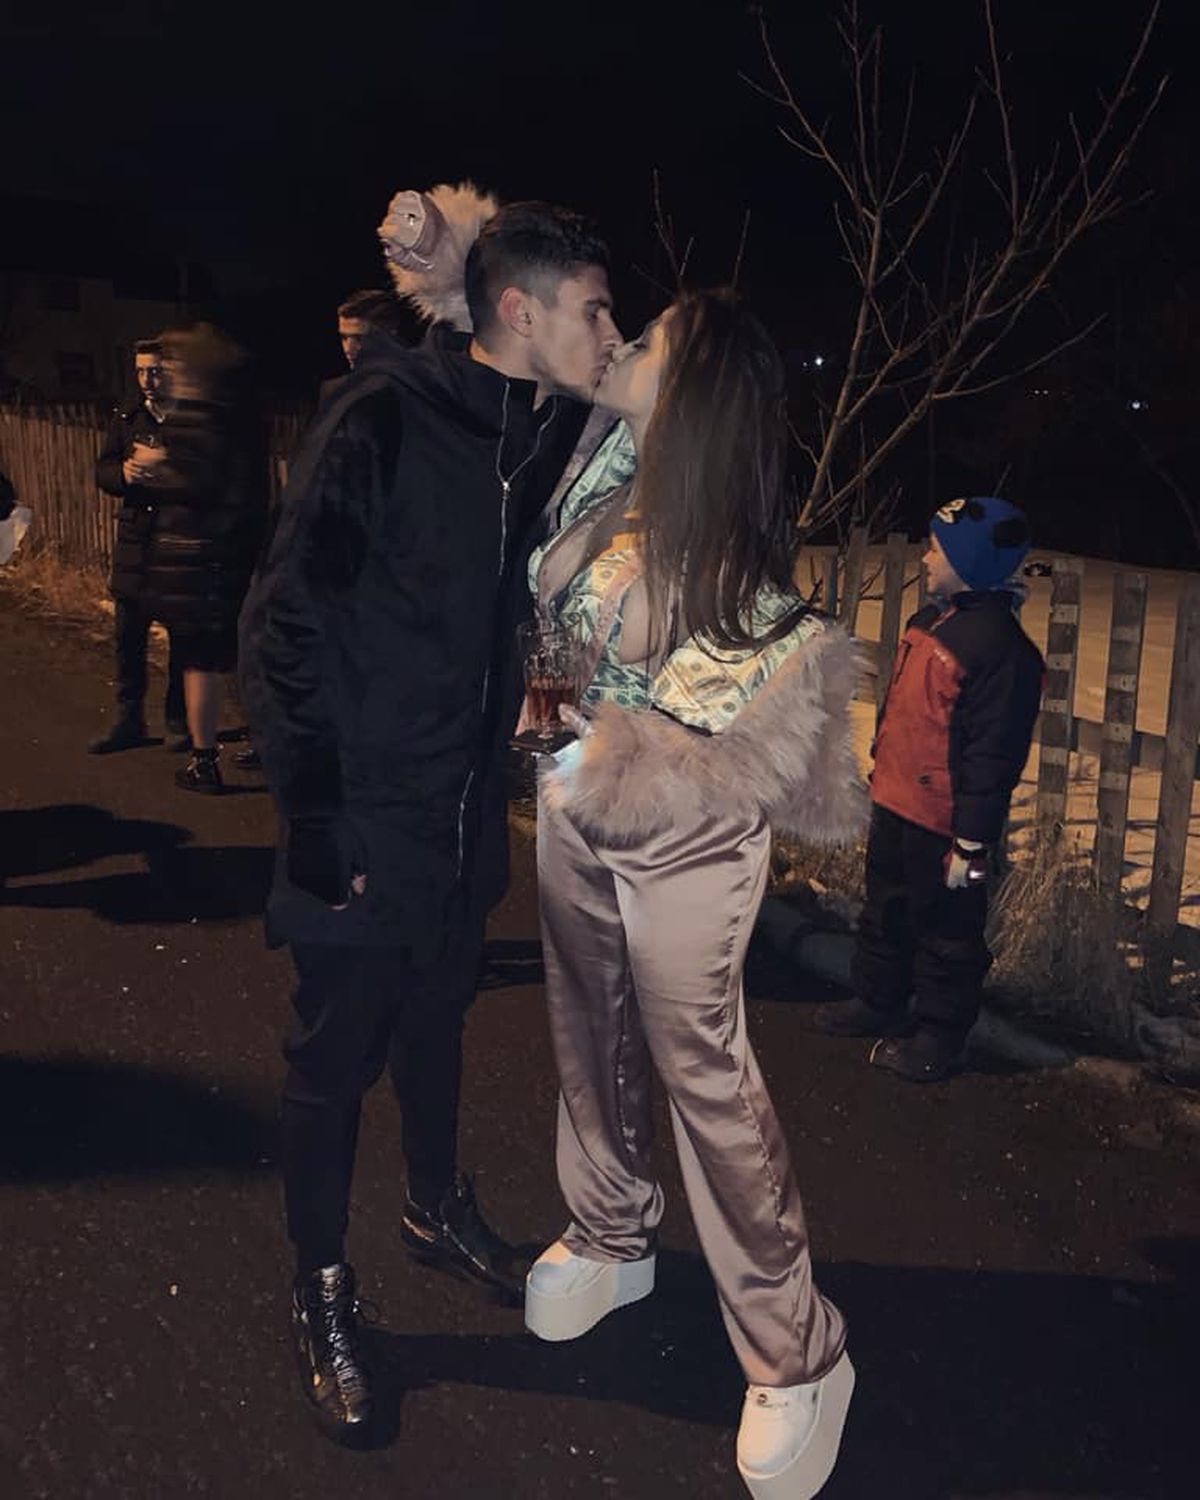 Ioana Timofeciuc, prietena lui Florinel Coman, a provocat agitație pe Instagram: „Nu mă mai spamați”